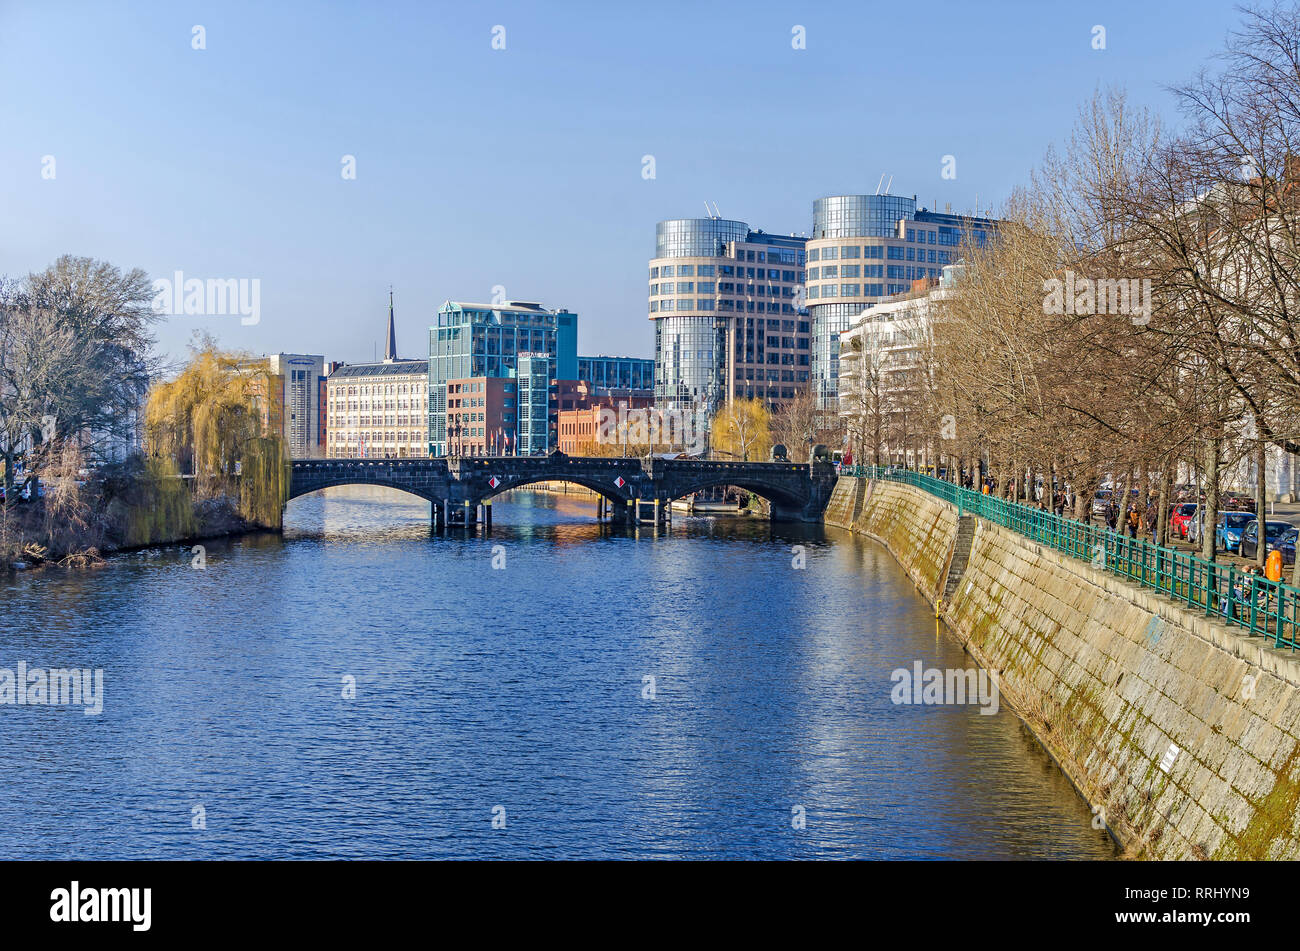 Berlin, Deutschland - 14. Februar 2019: Spree damm Helgolaender Ufer mit dem Moabiter Brücke, den neu gestalteten Bereich Spree-Bogen Stockfoto